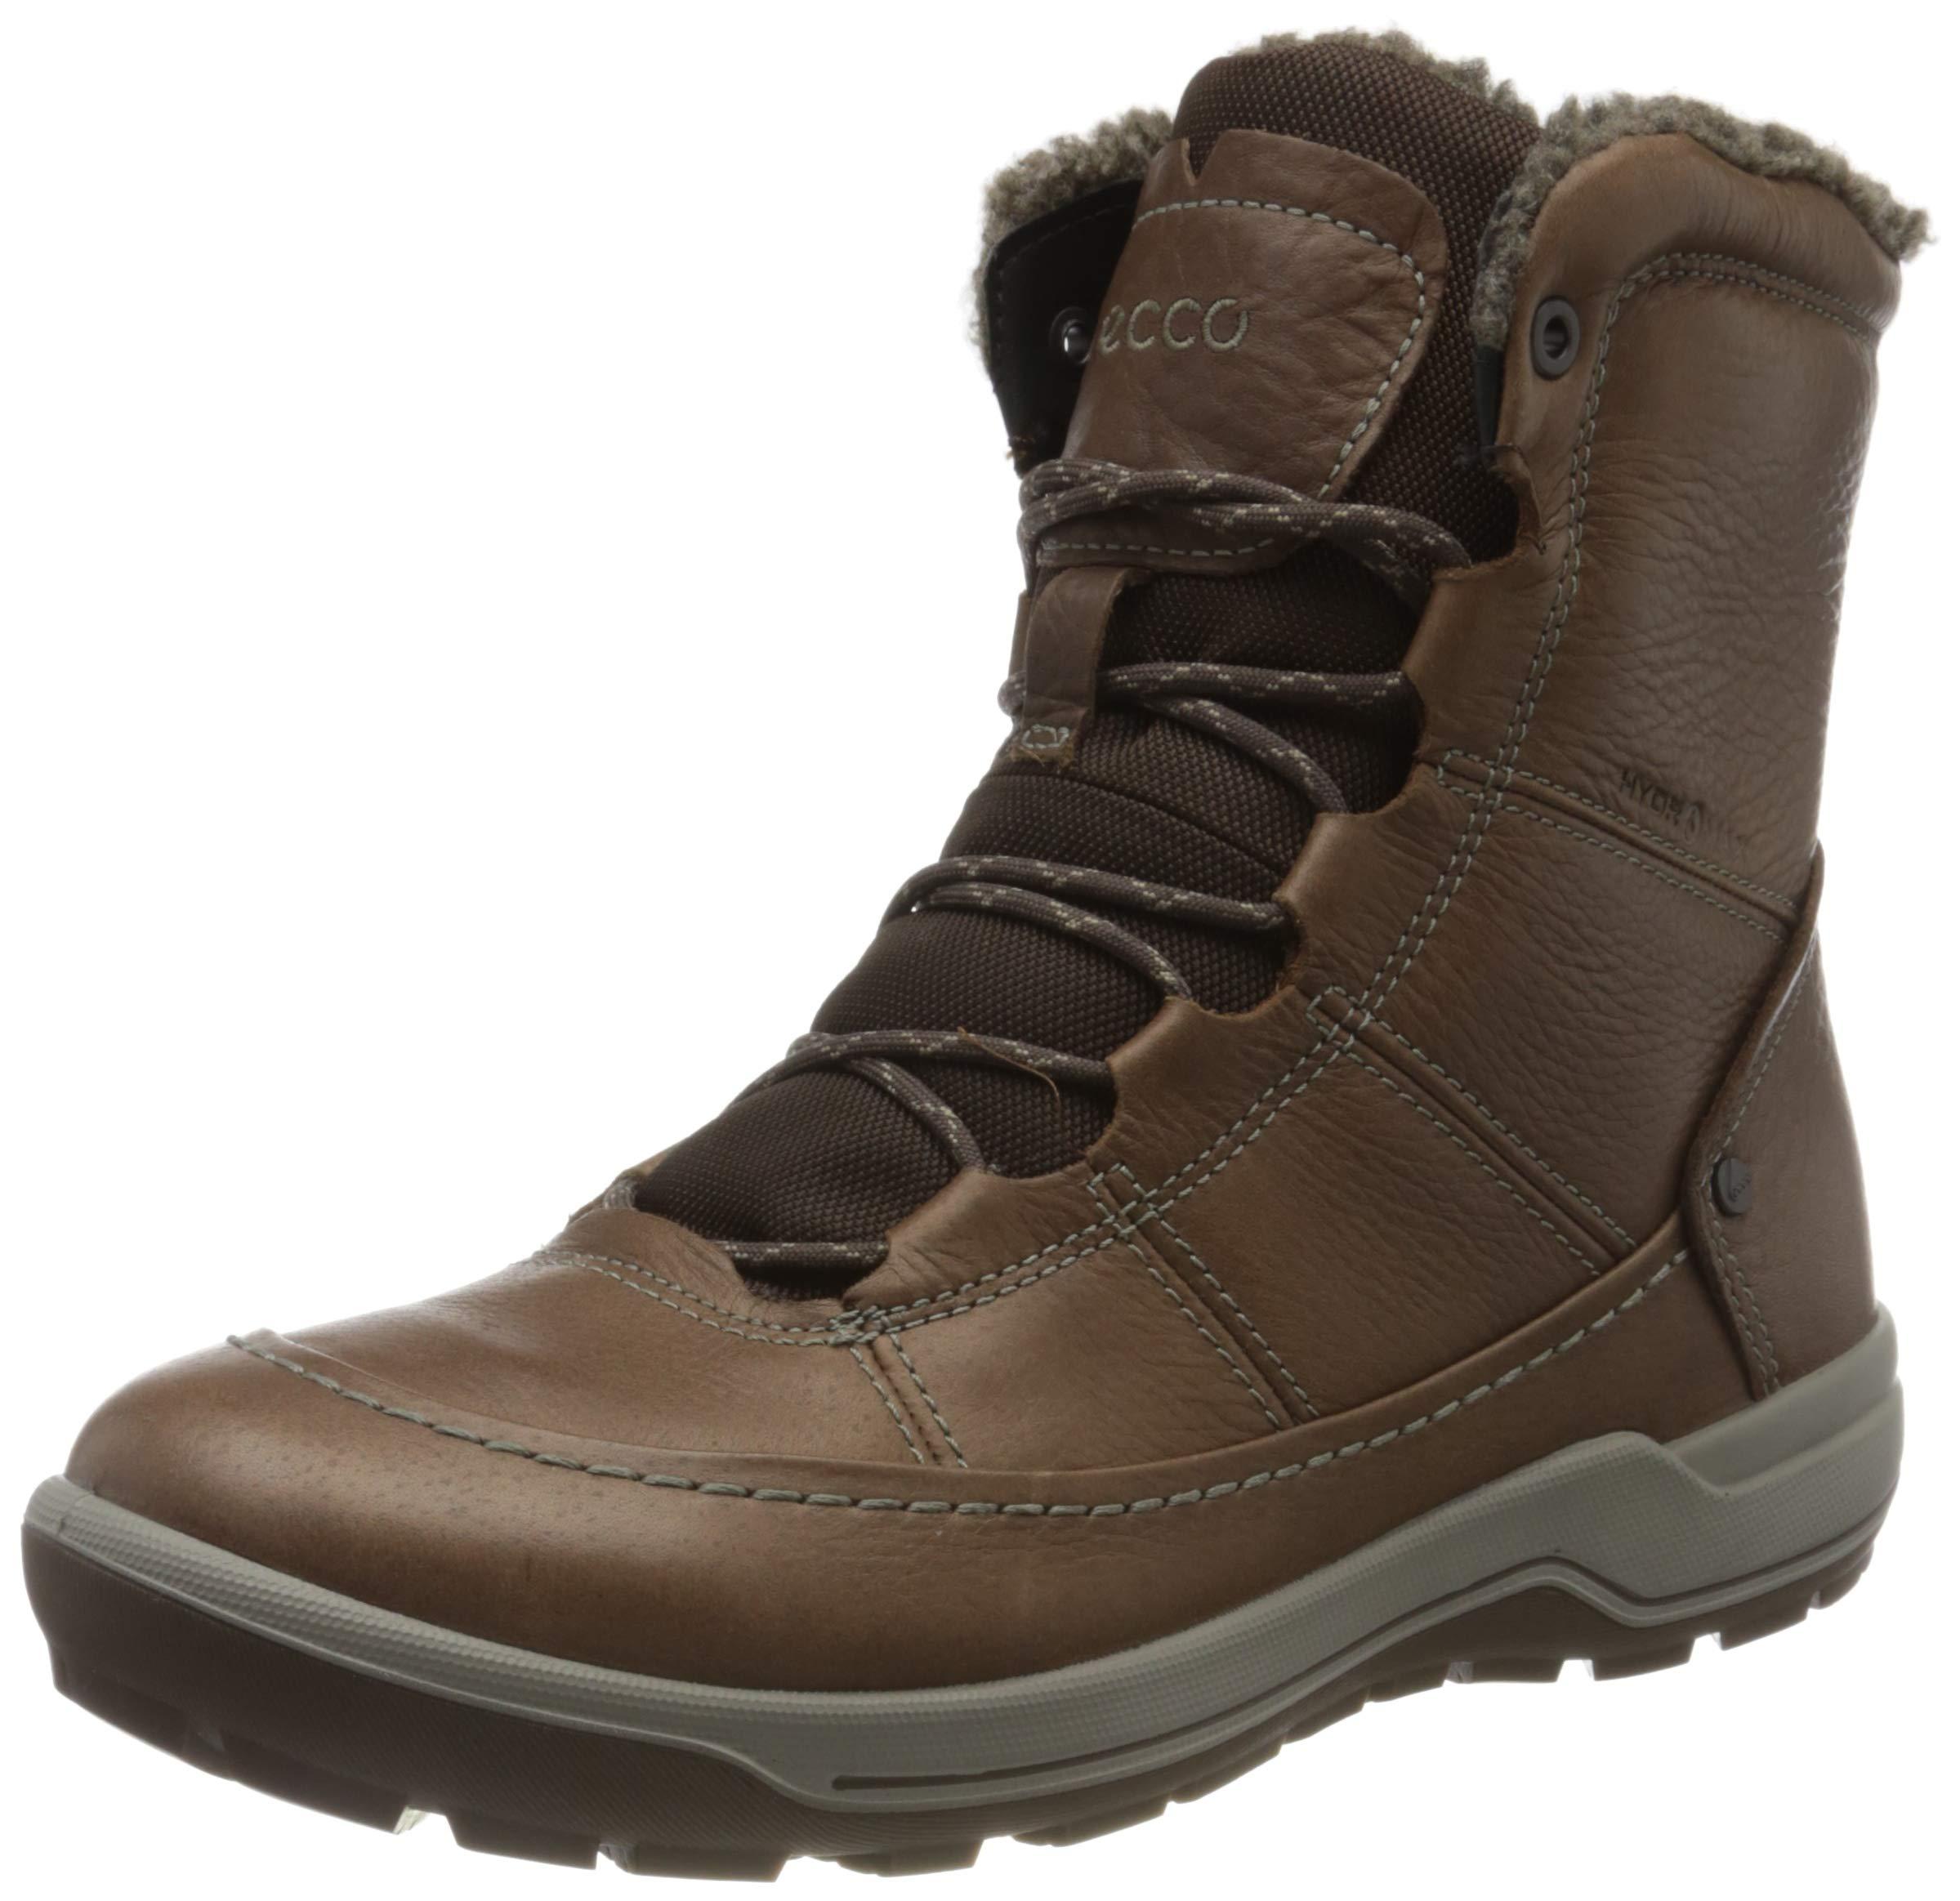 Ecco Leather Trace Lite Hydromax Mid Boot in Cocoa Brown Nubuck (Brown